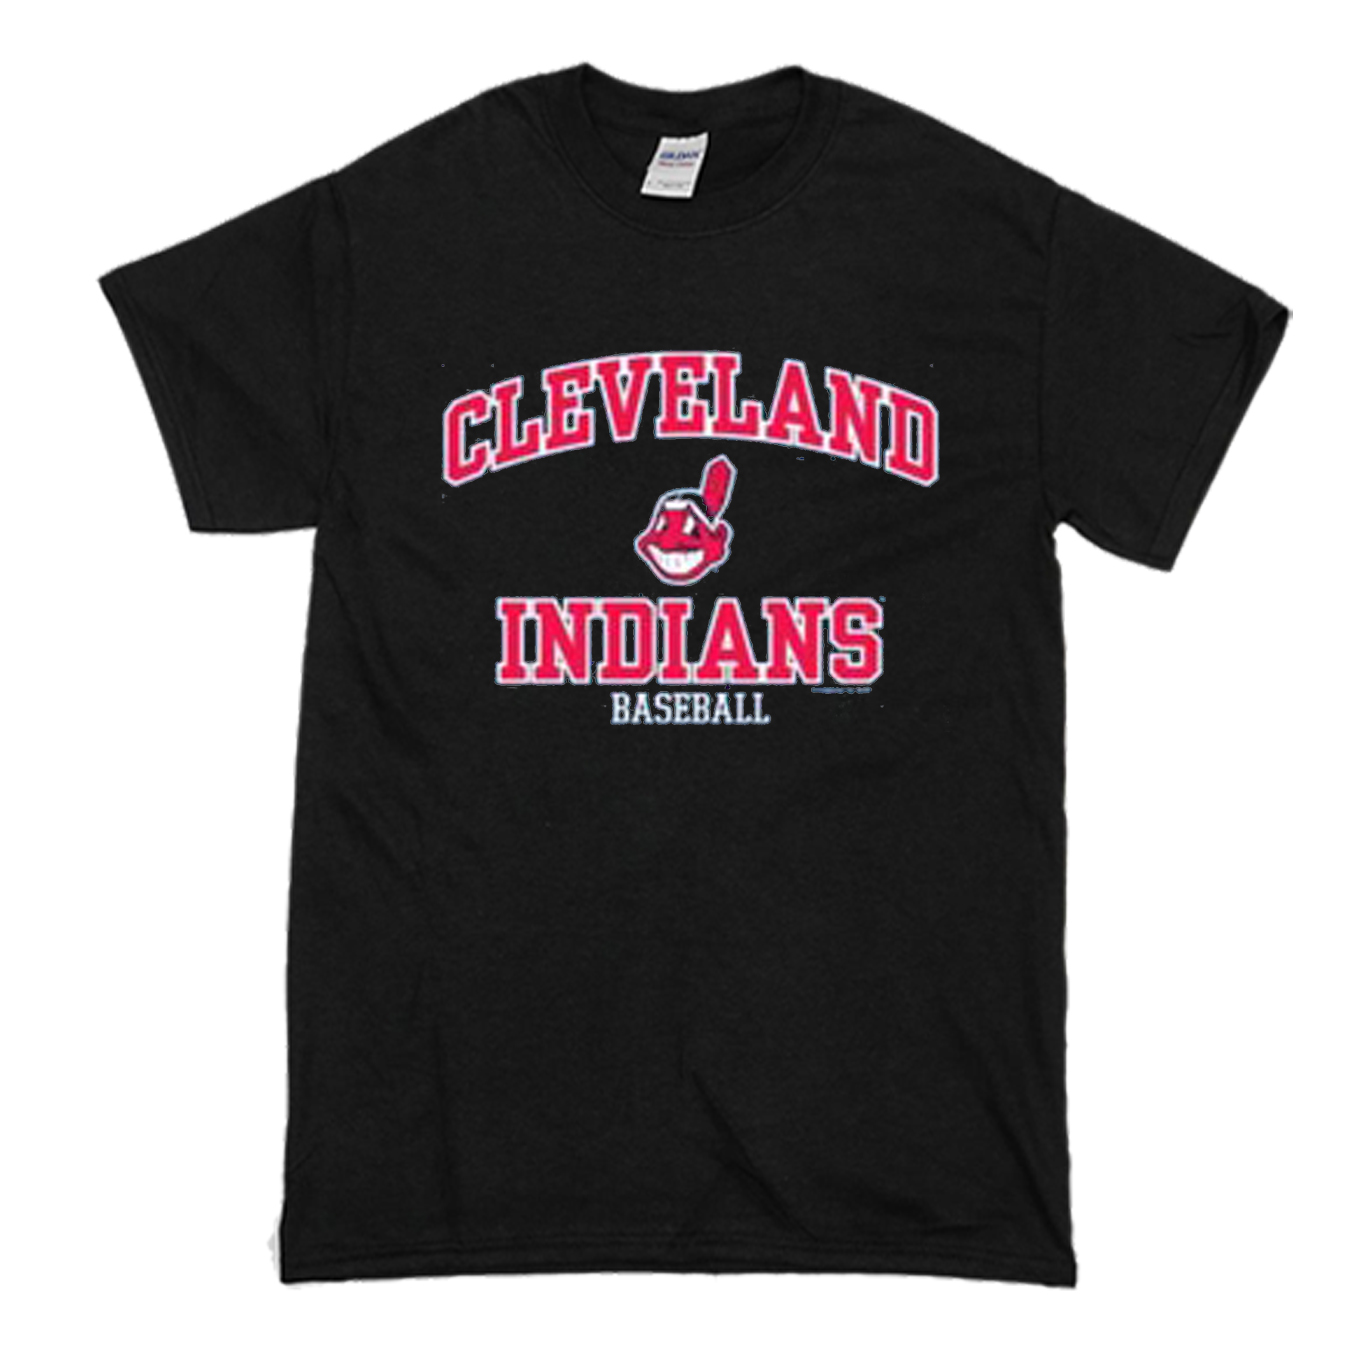 cleveland indians shirts